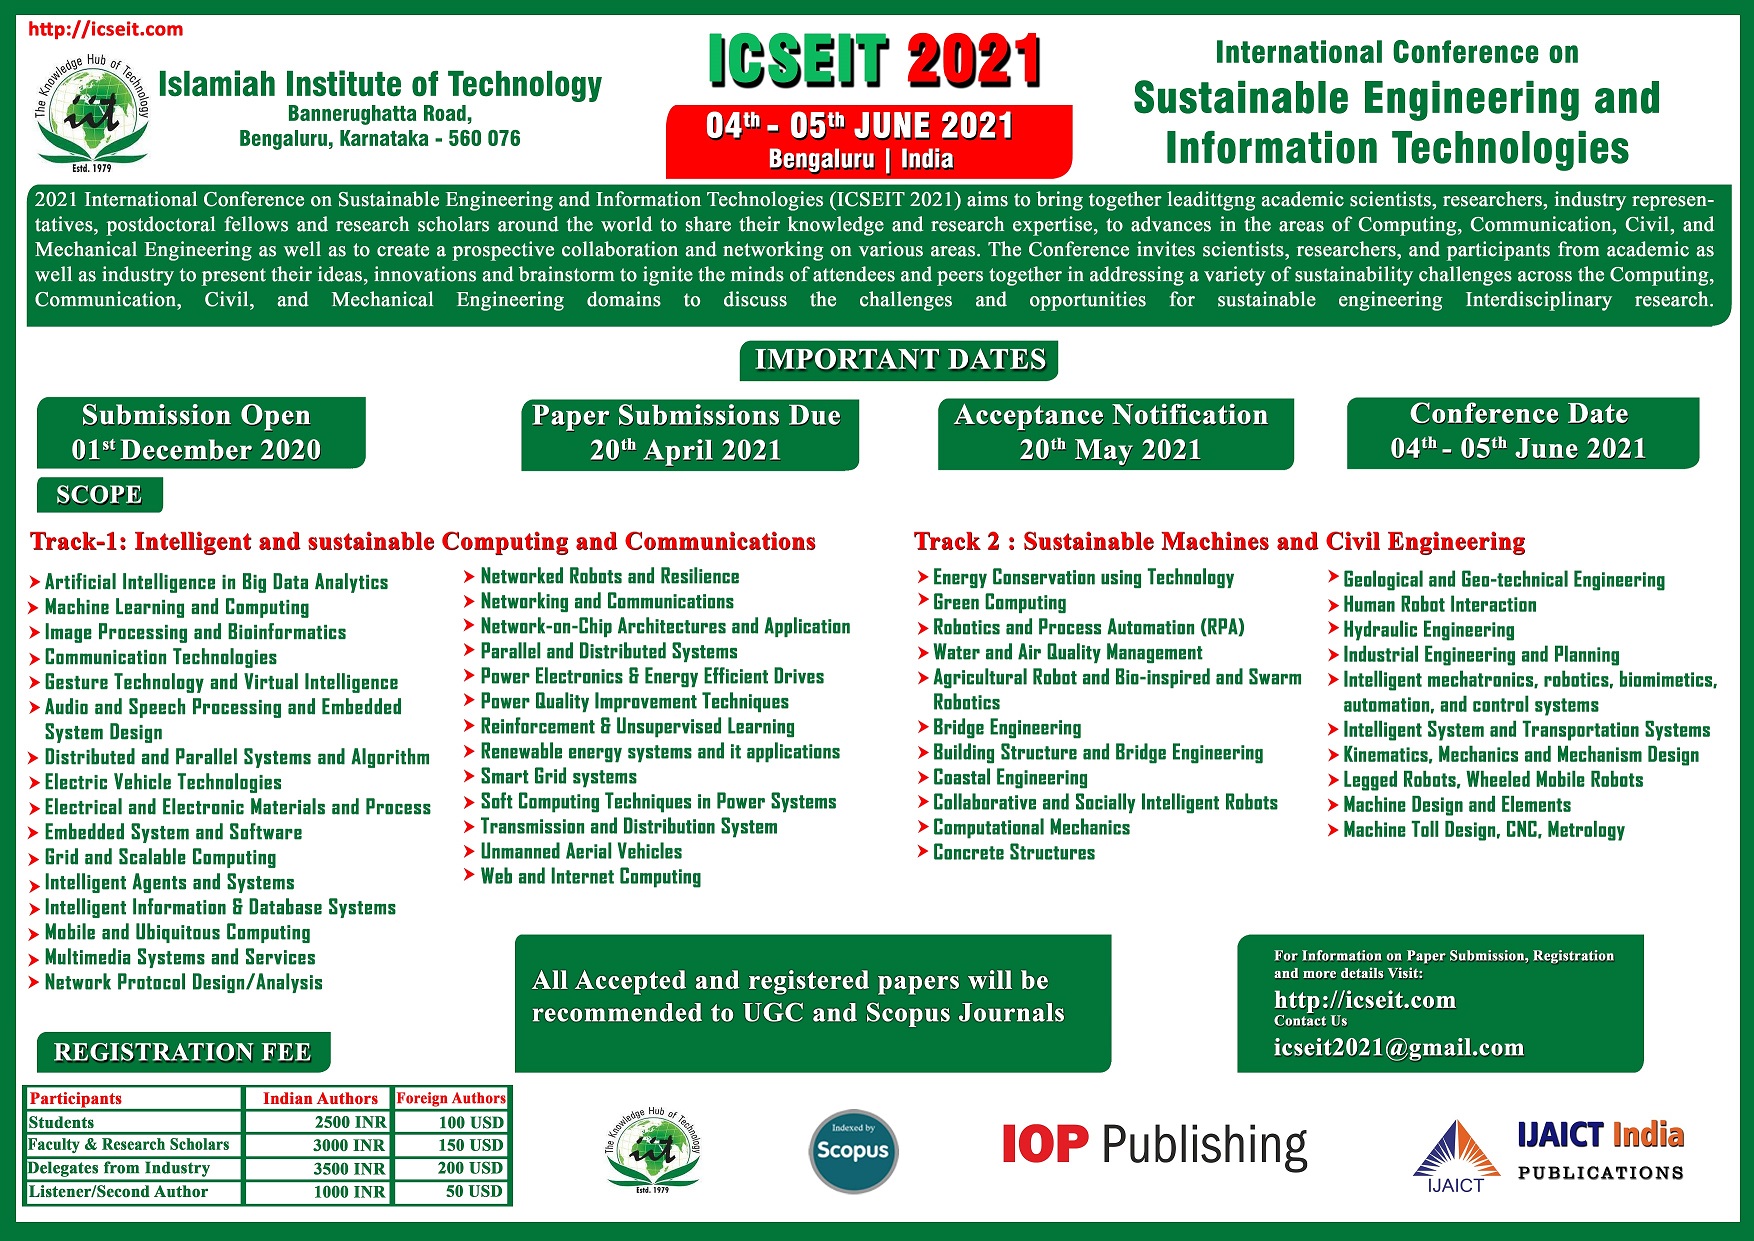 International Conference on Sustainable Engineering and Information Technologies (ICSEIT 2021), Bangalore, Karnataka, India